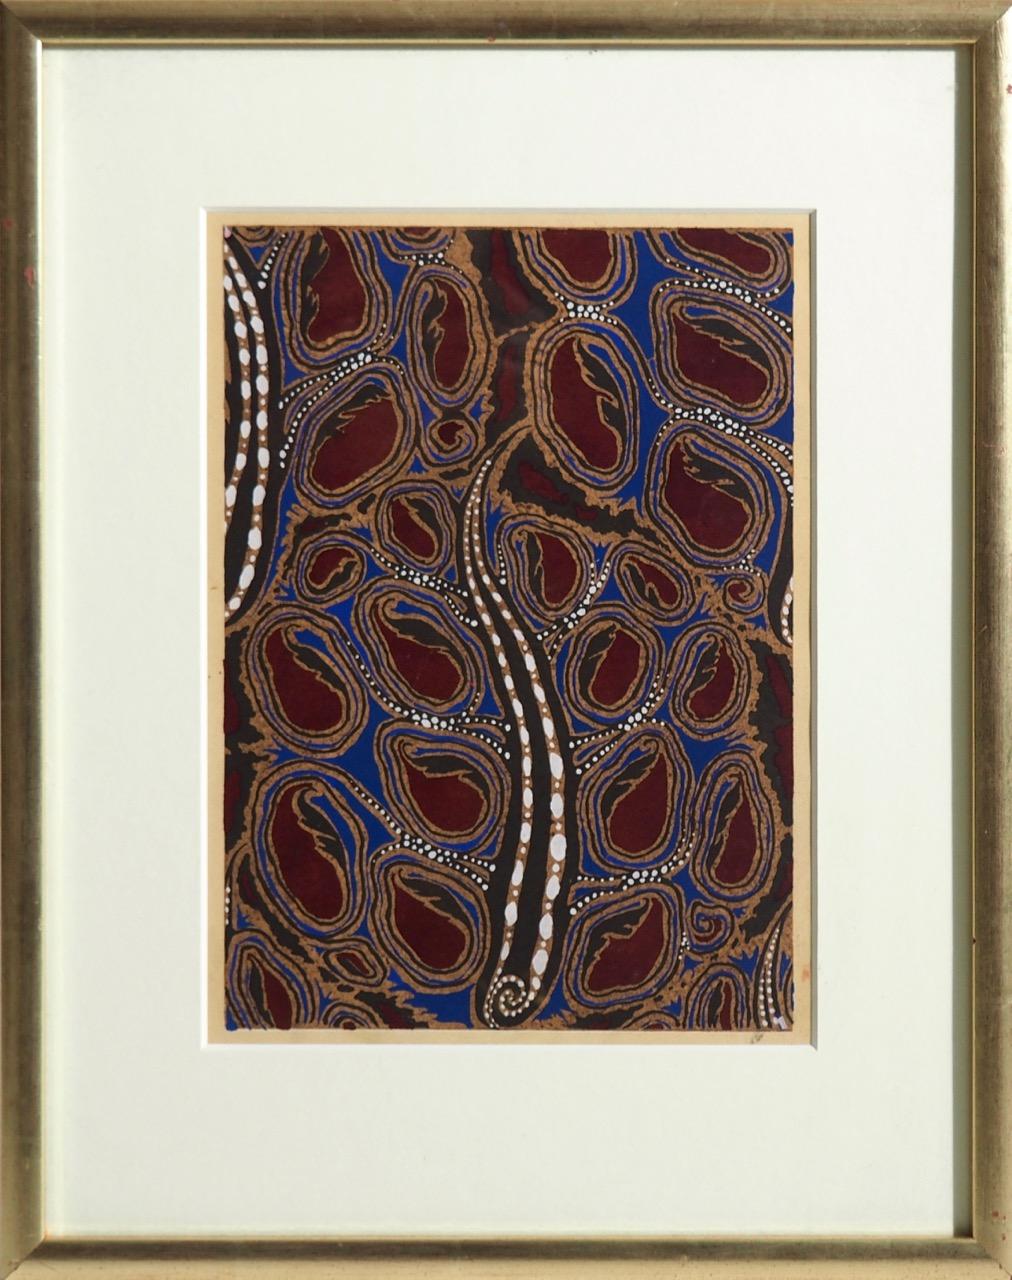 Drei schöne Holzschnitte im Stil des Fauvismus (vertreten durch Matisse), um 1910. Sehr dekorativ!
Maße: H. 30, B. 21 cm.
H. 11.8, B. 8,2 in.